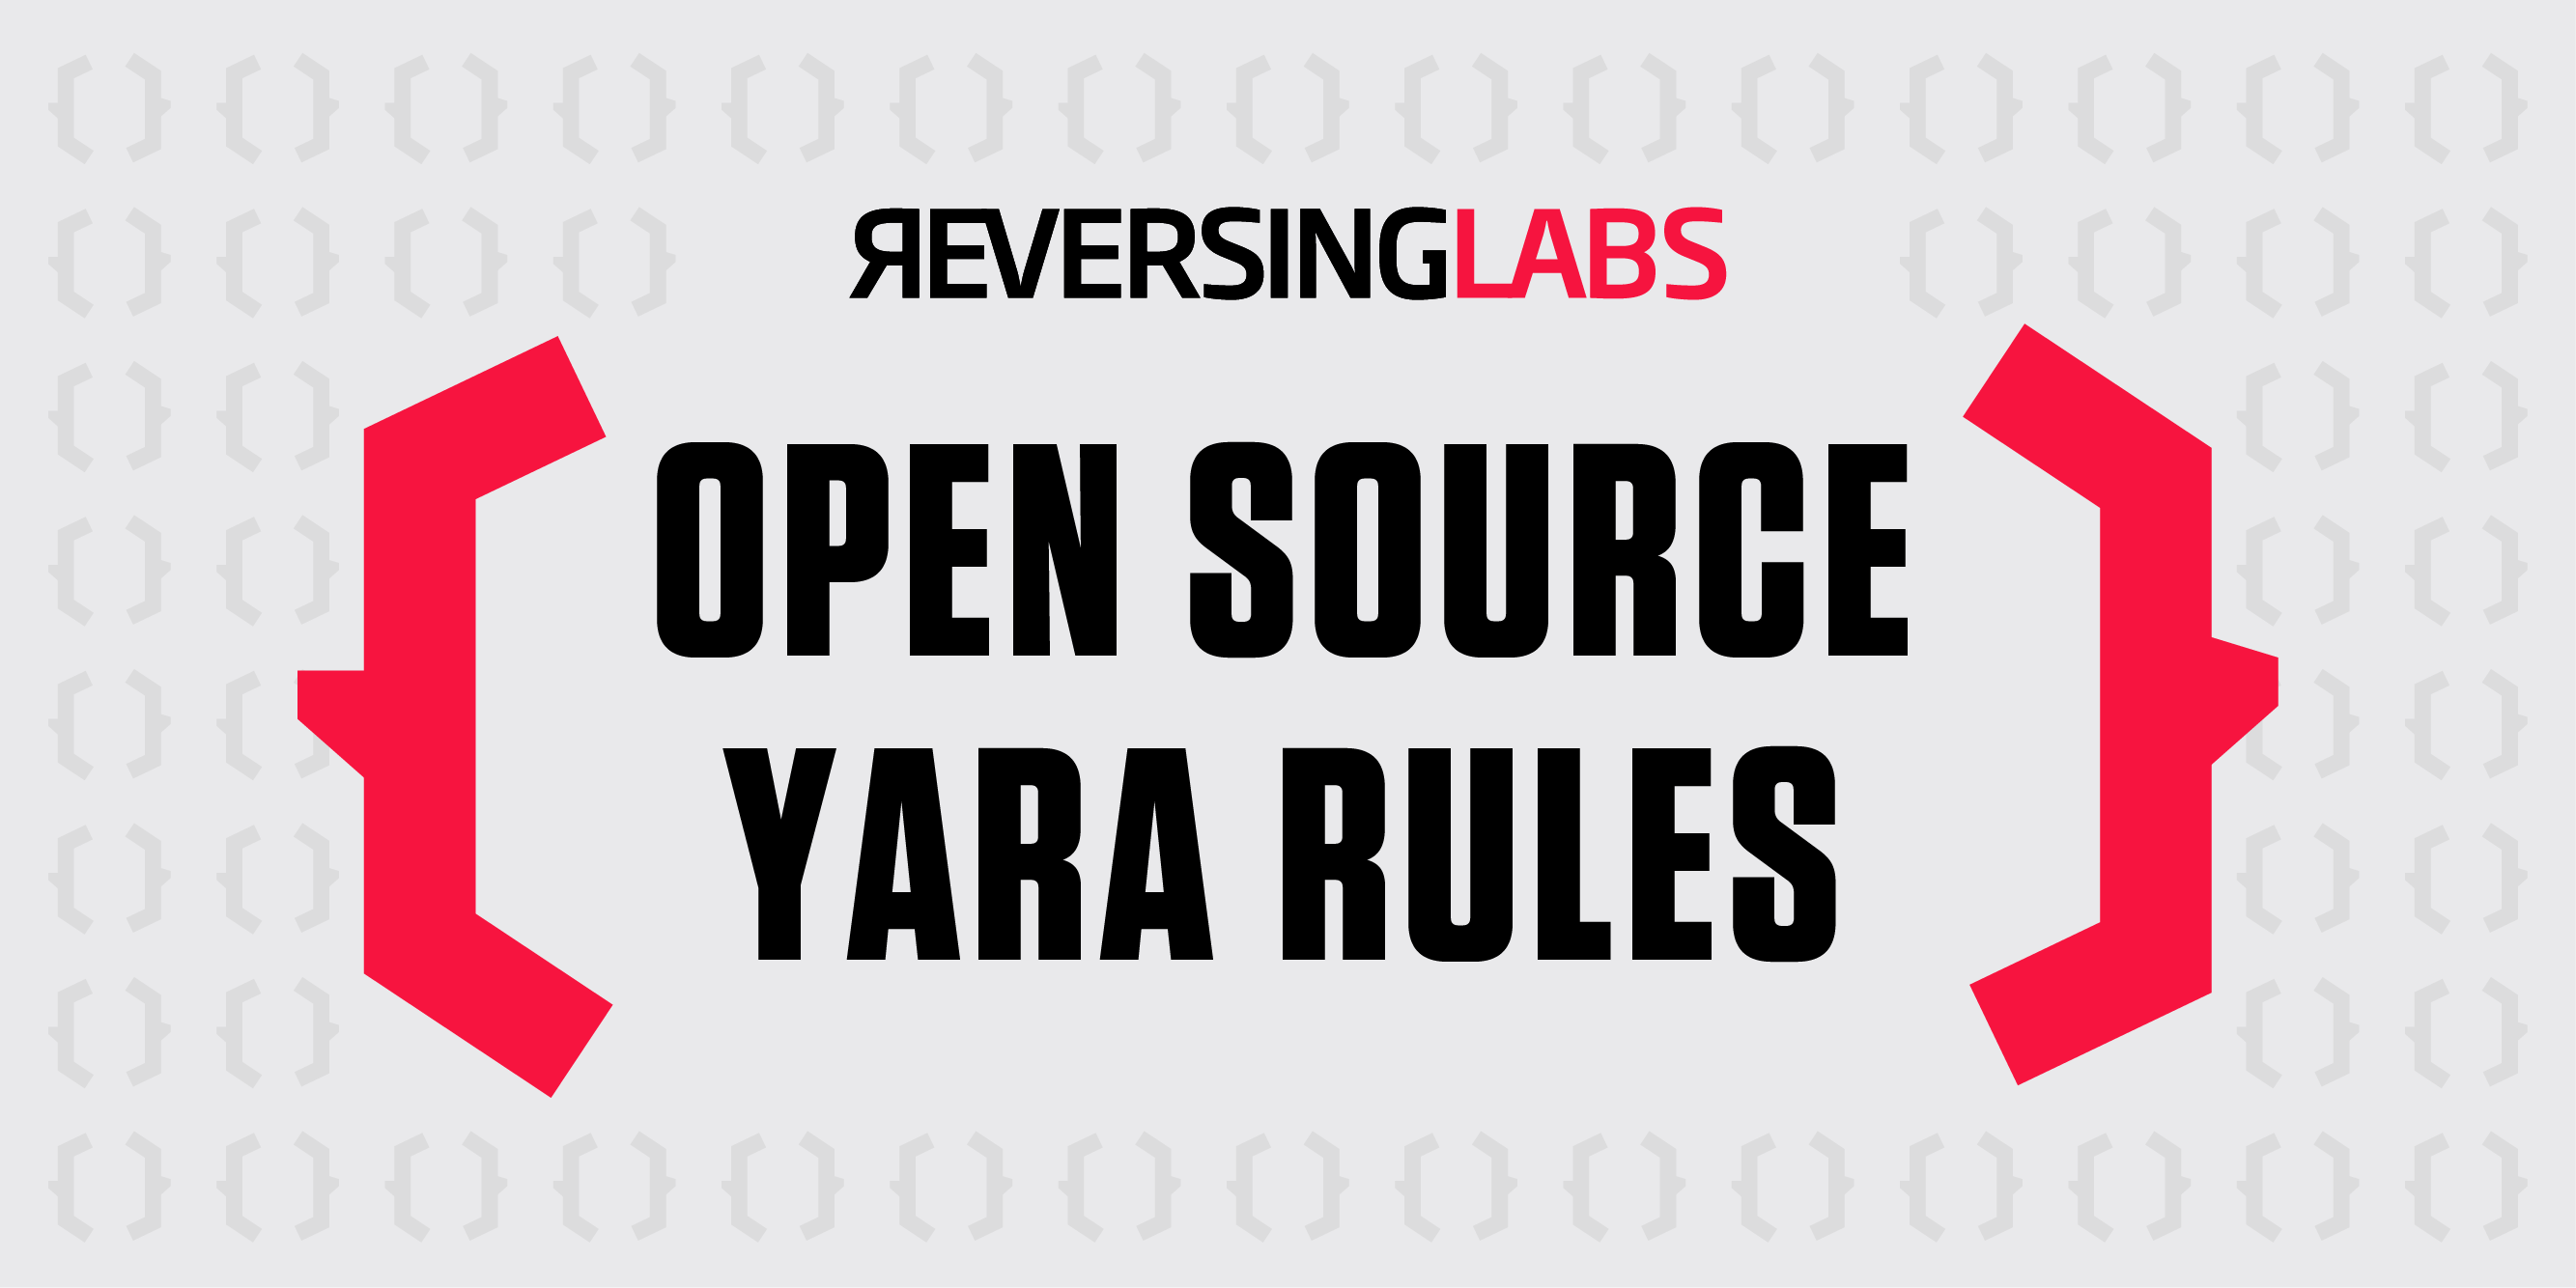 reversinglabs-yara-rules